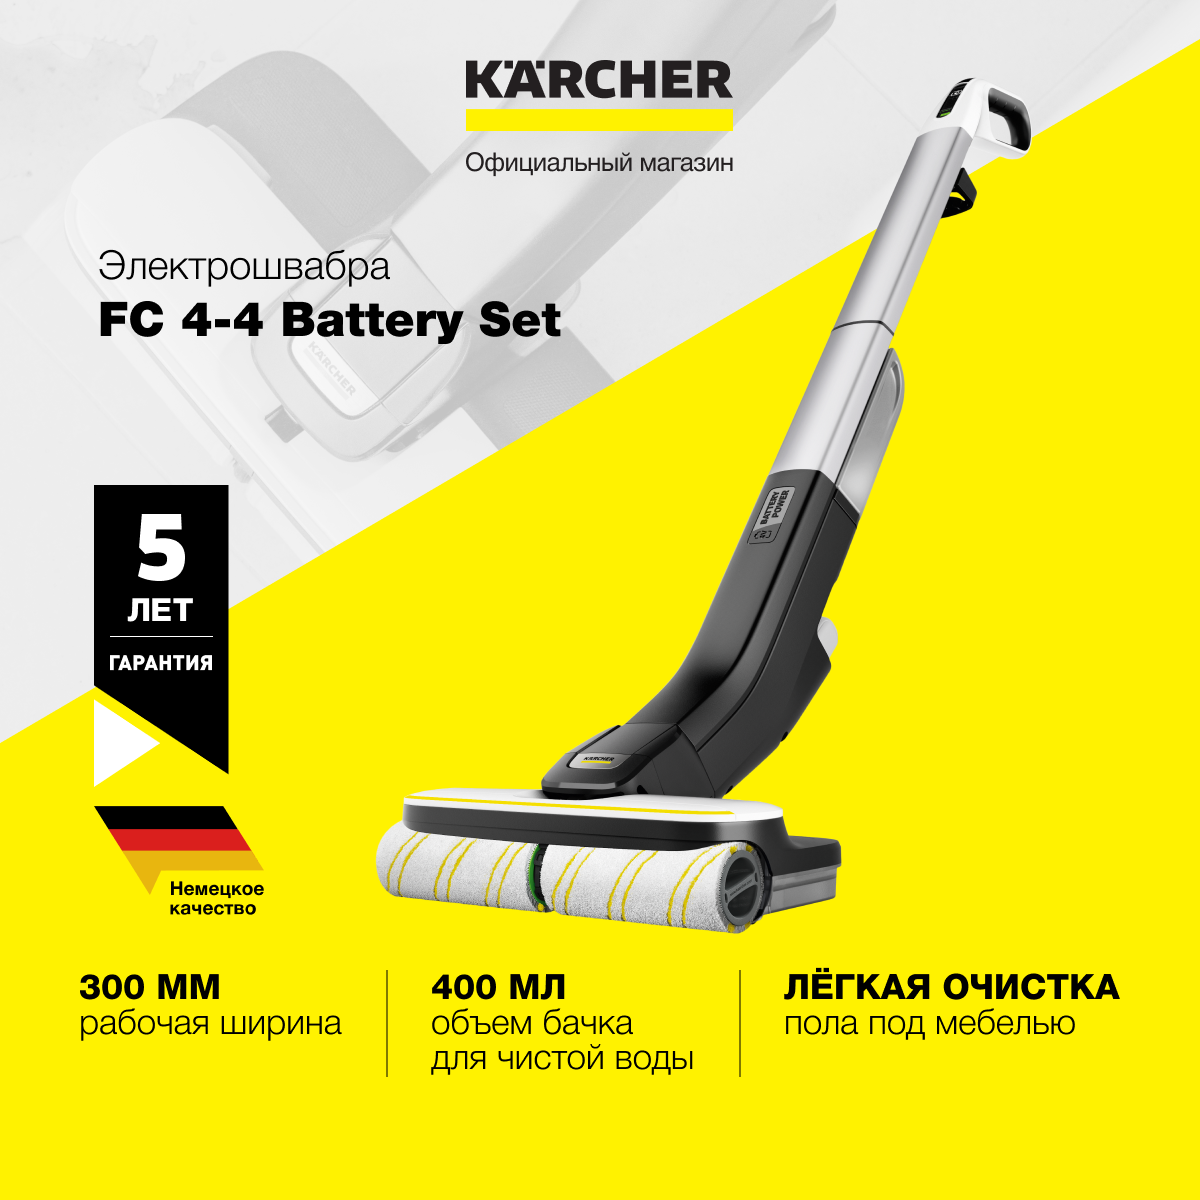 Электрошвабра Karcher FC 4-4 Battery Set 1.056-400.0, аккумулятор и зарядное устройство в комплекте